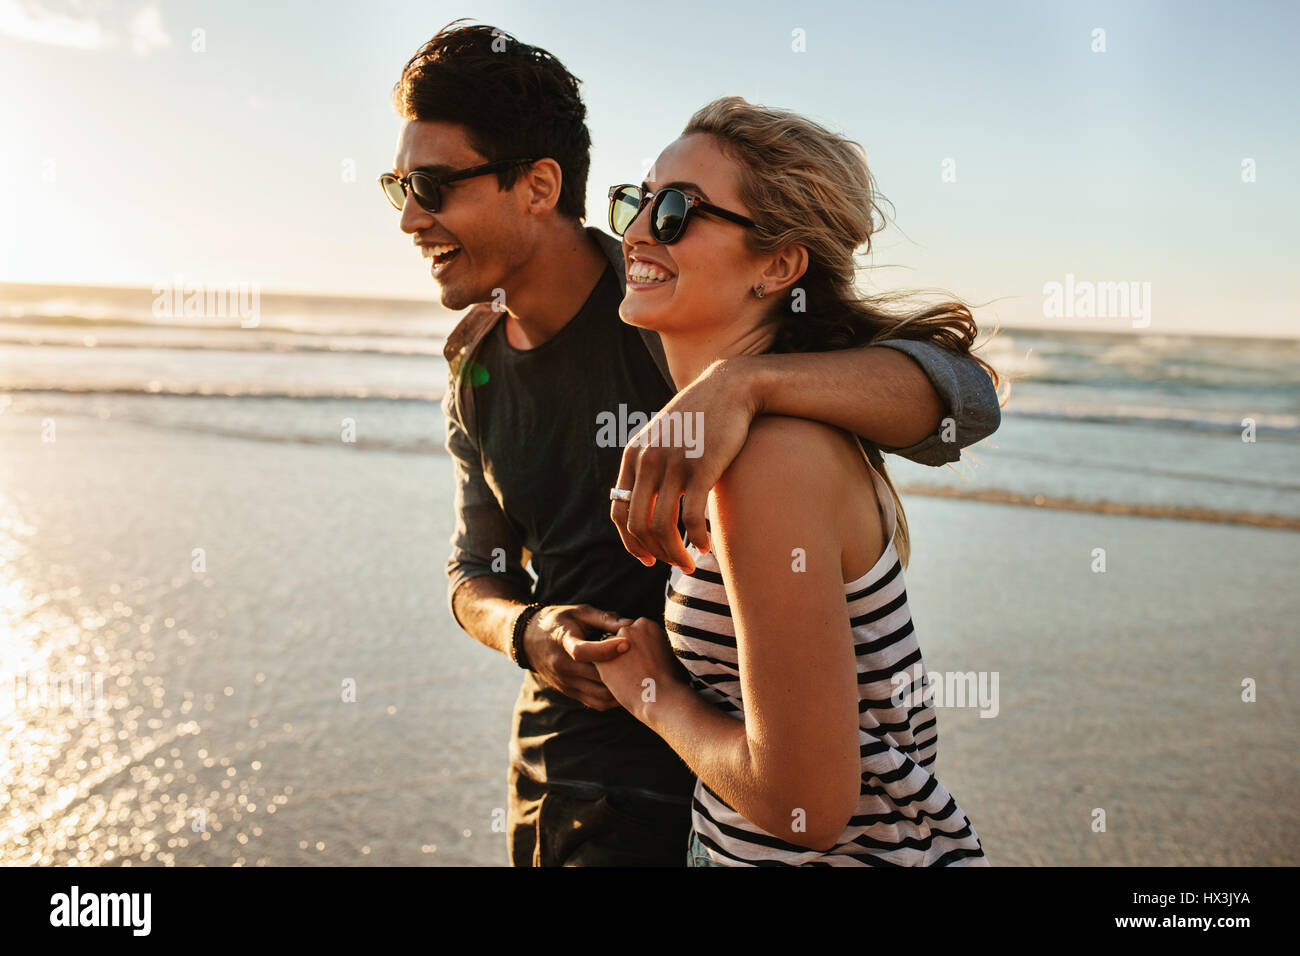 Disparó al aire libre de sonriente joven pareja caminando por la playa. Joven Hombre y Mujer paseando junto a la orilla del mar, en un día de verano. Foto de stock